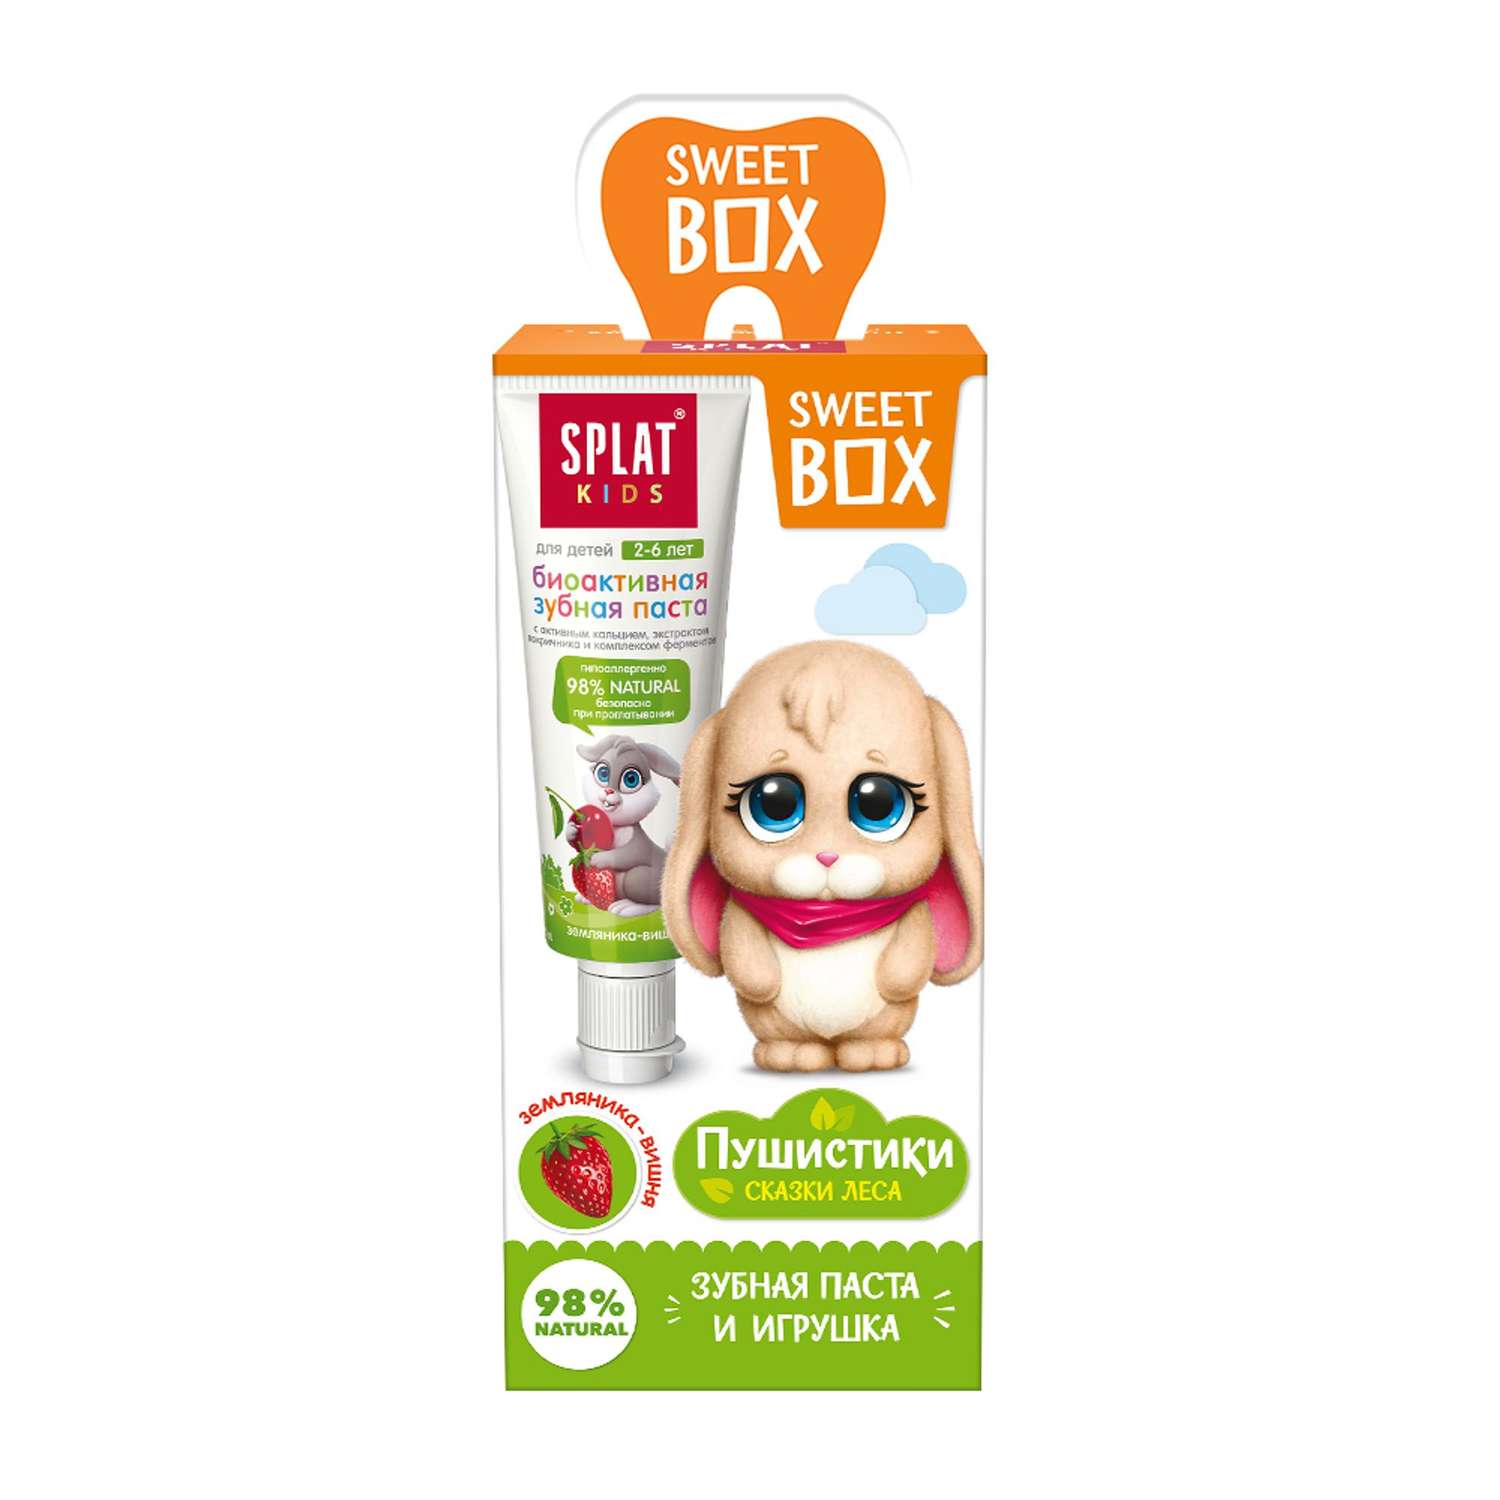 Набор Splat Sweetbox зубная паста Земляника-Вишня 20мл+игрушка - фото 1